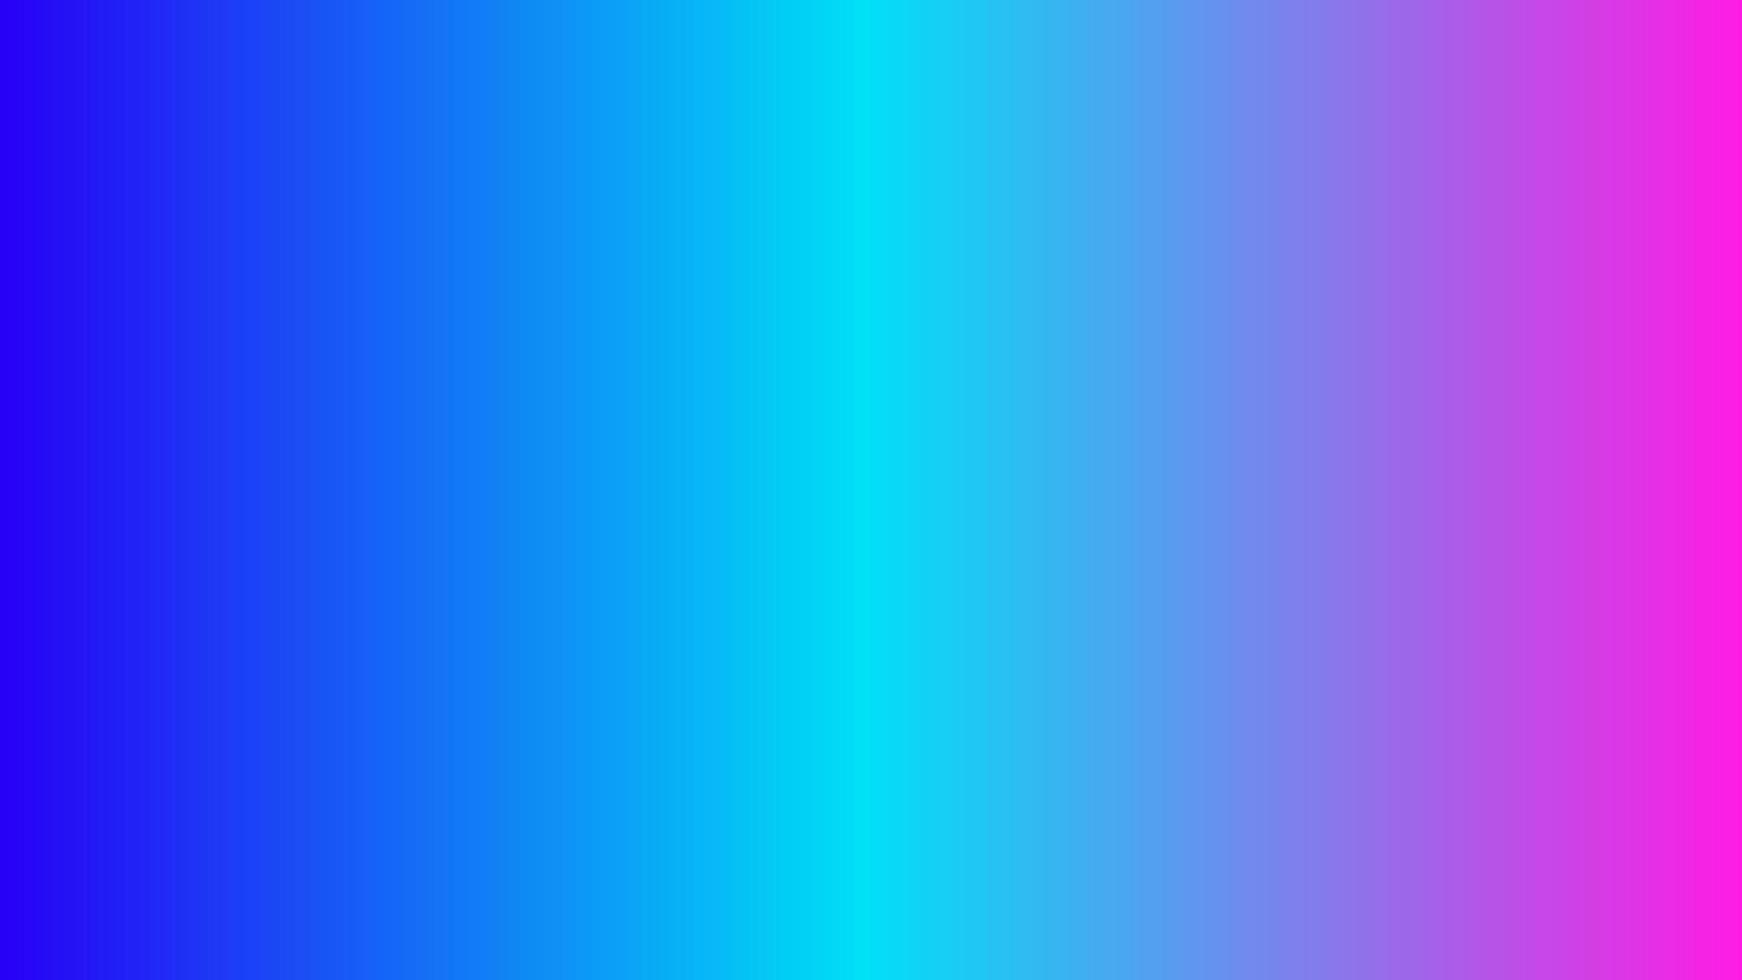 abstrakt ljusblå och rosa gradientbakgrund perfekt för marknadsföring, presentation, tapeter, design etc vektor